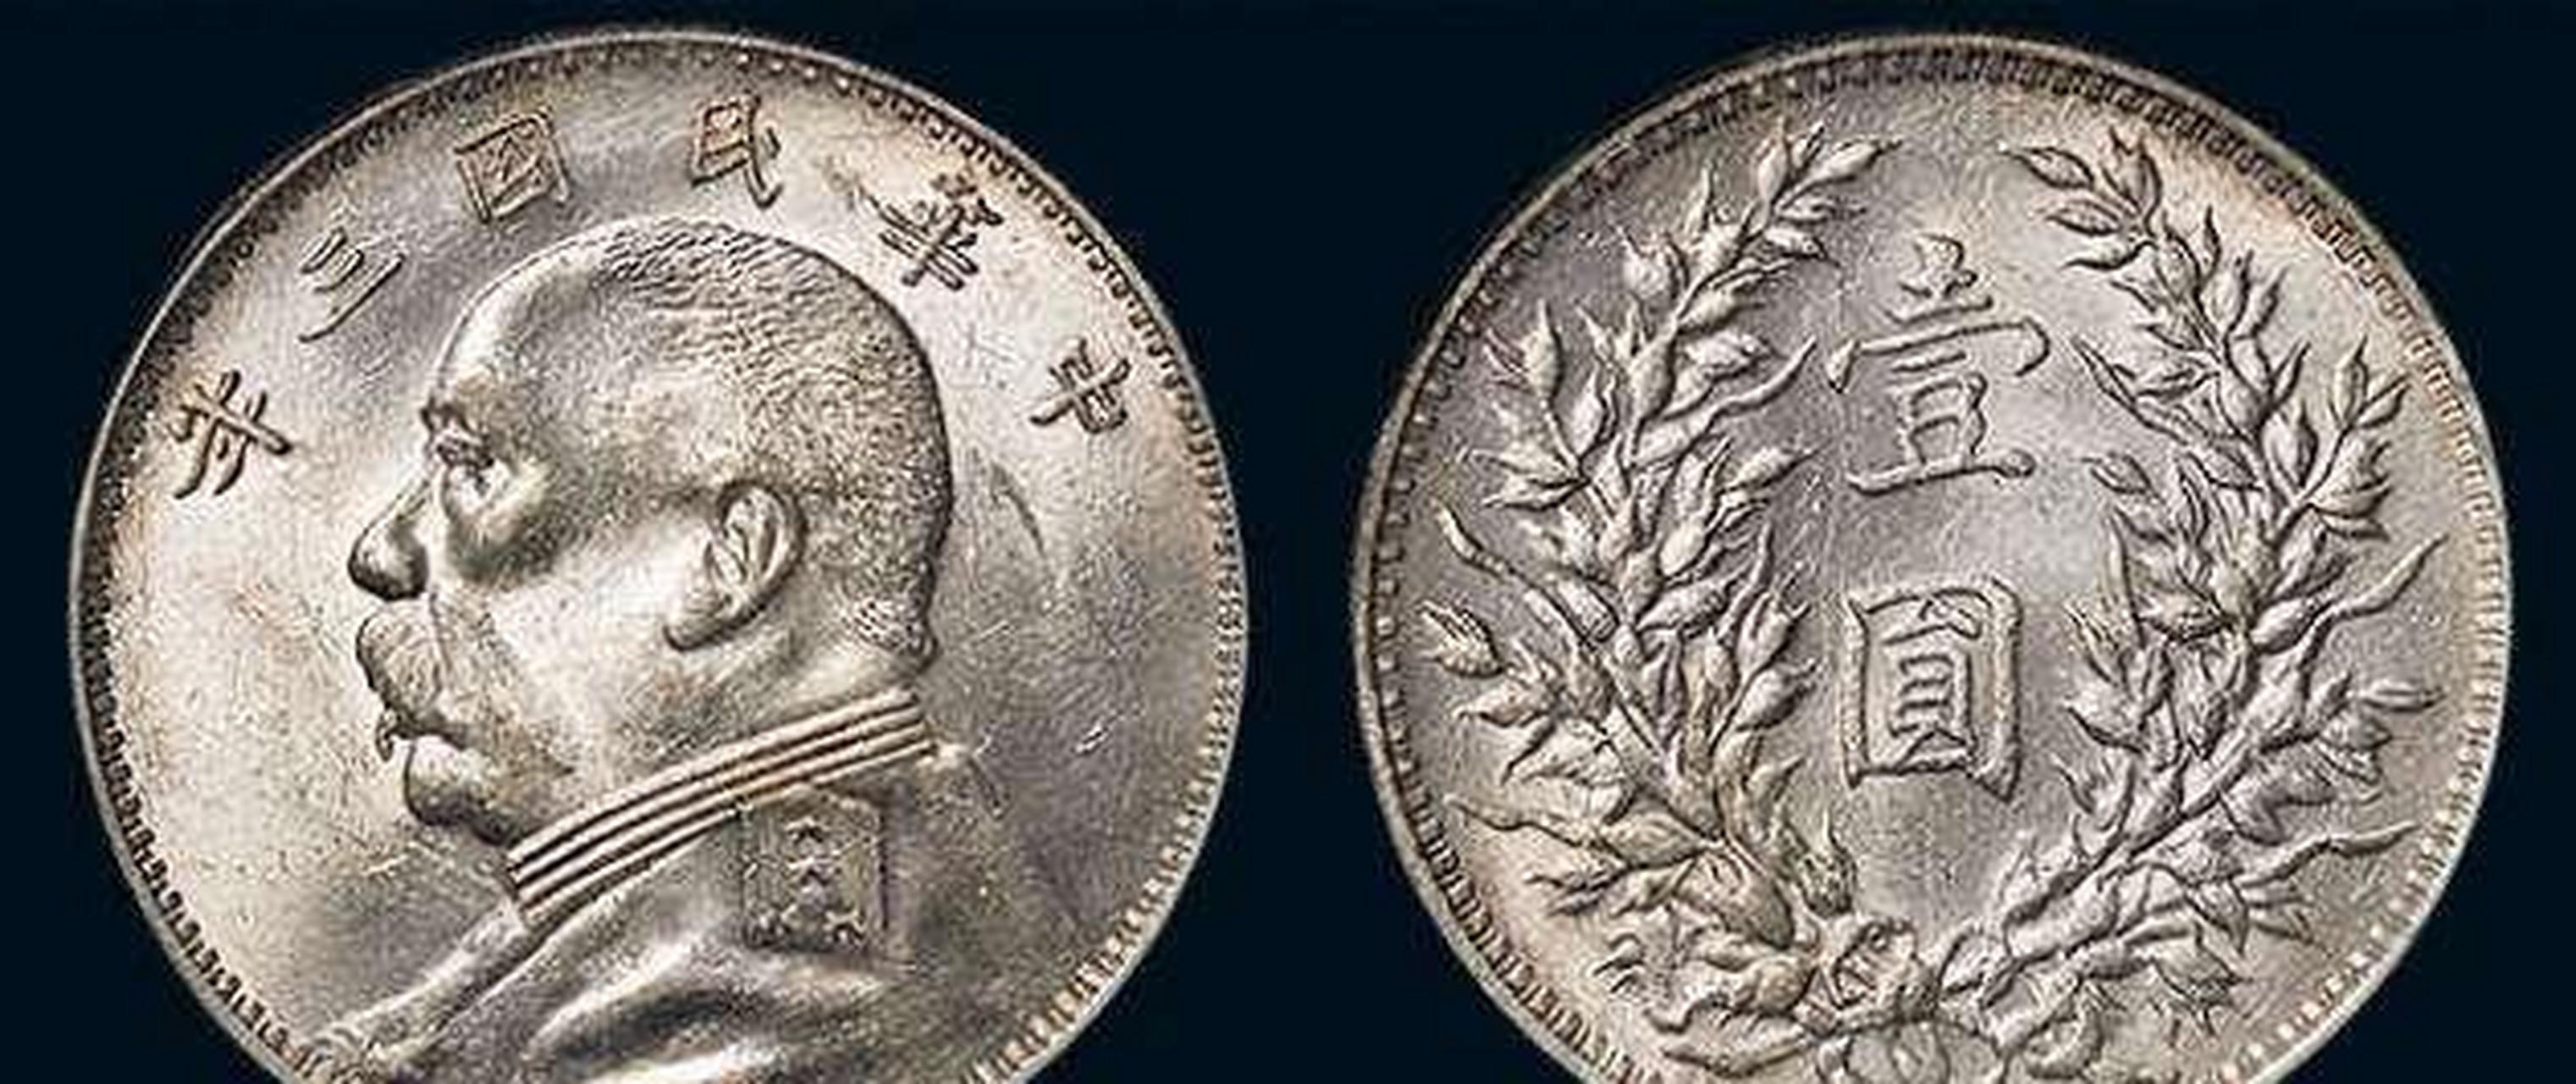 民国初年一个大洋值多少人民币?袁大头作为古董有价值吗?